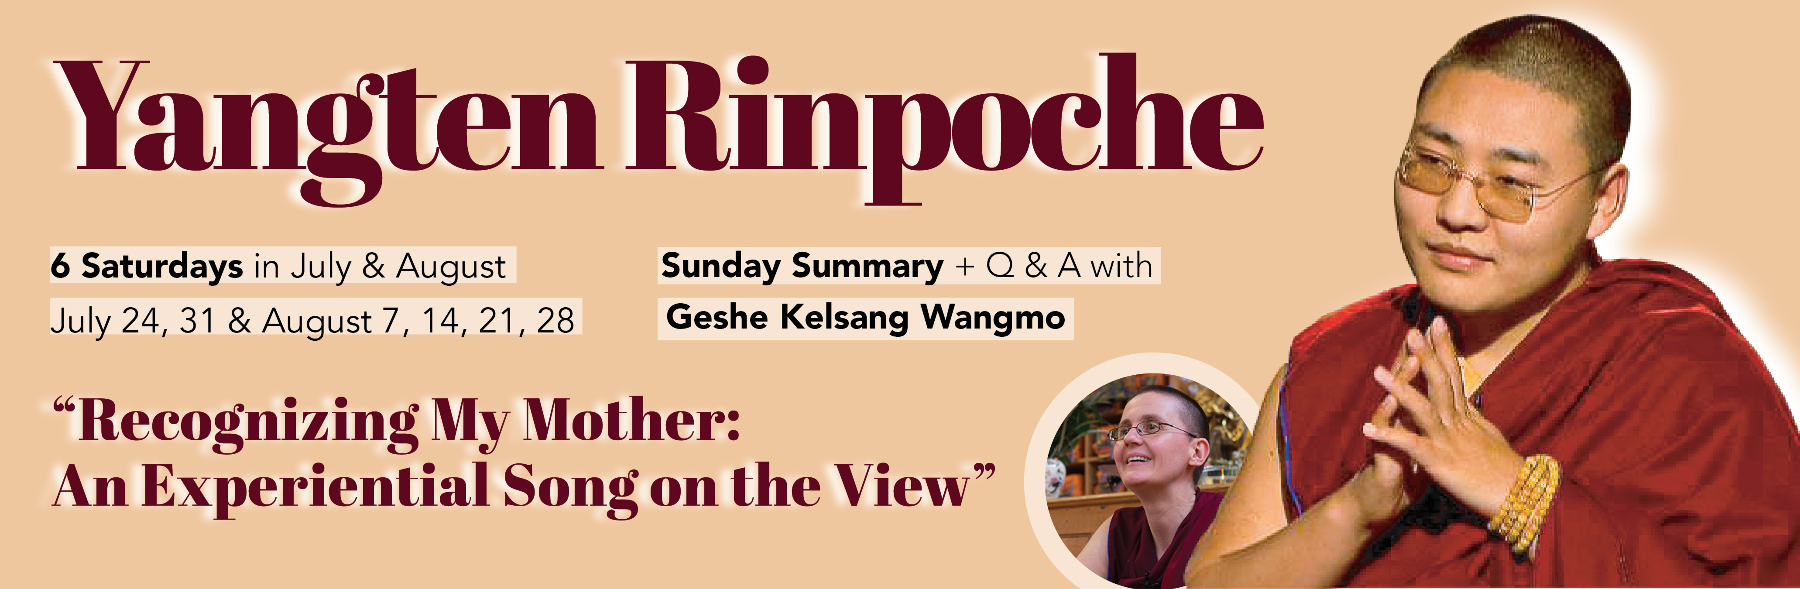 6 Weekends with Yangten Rinpoche & Geshema Kelsang Wangmo